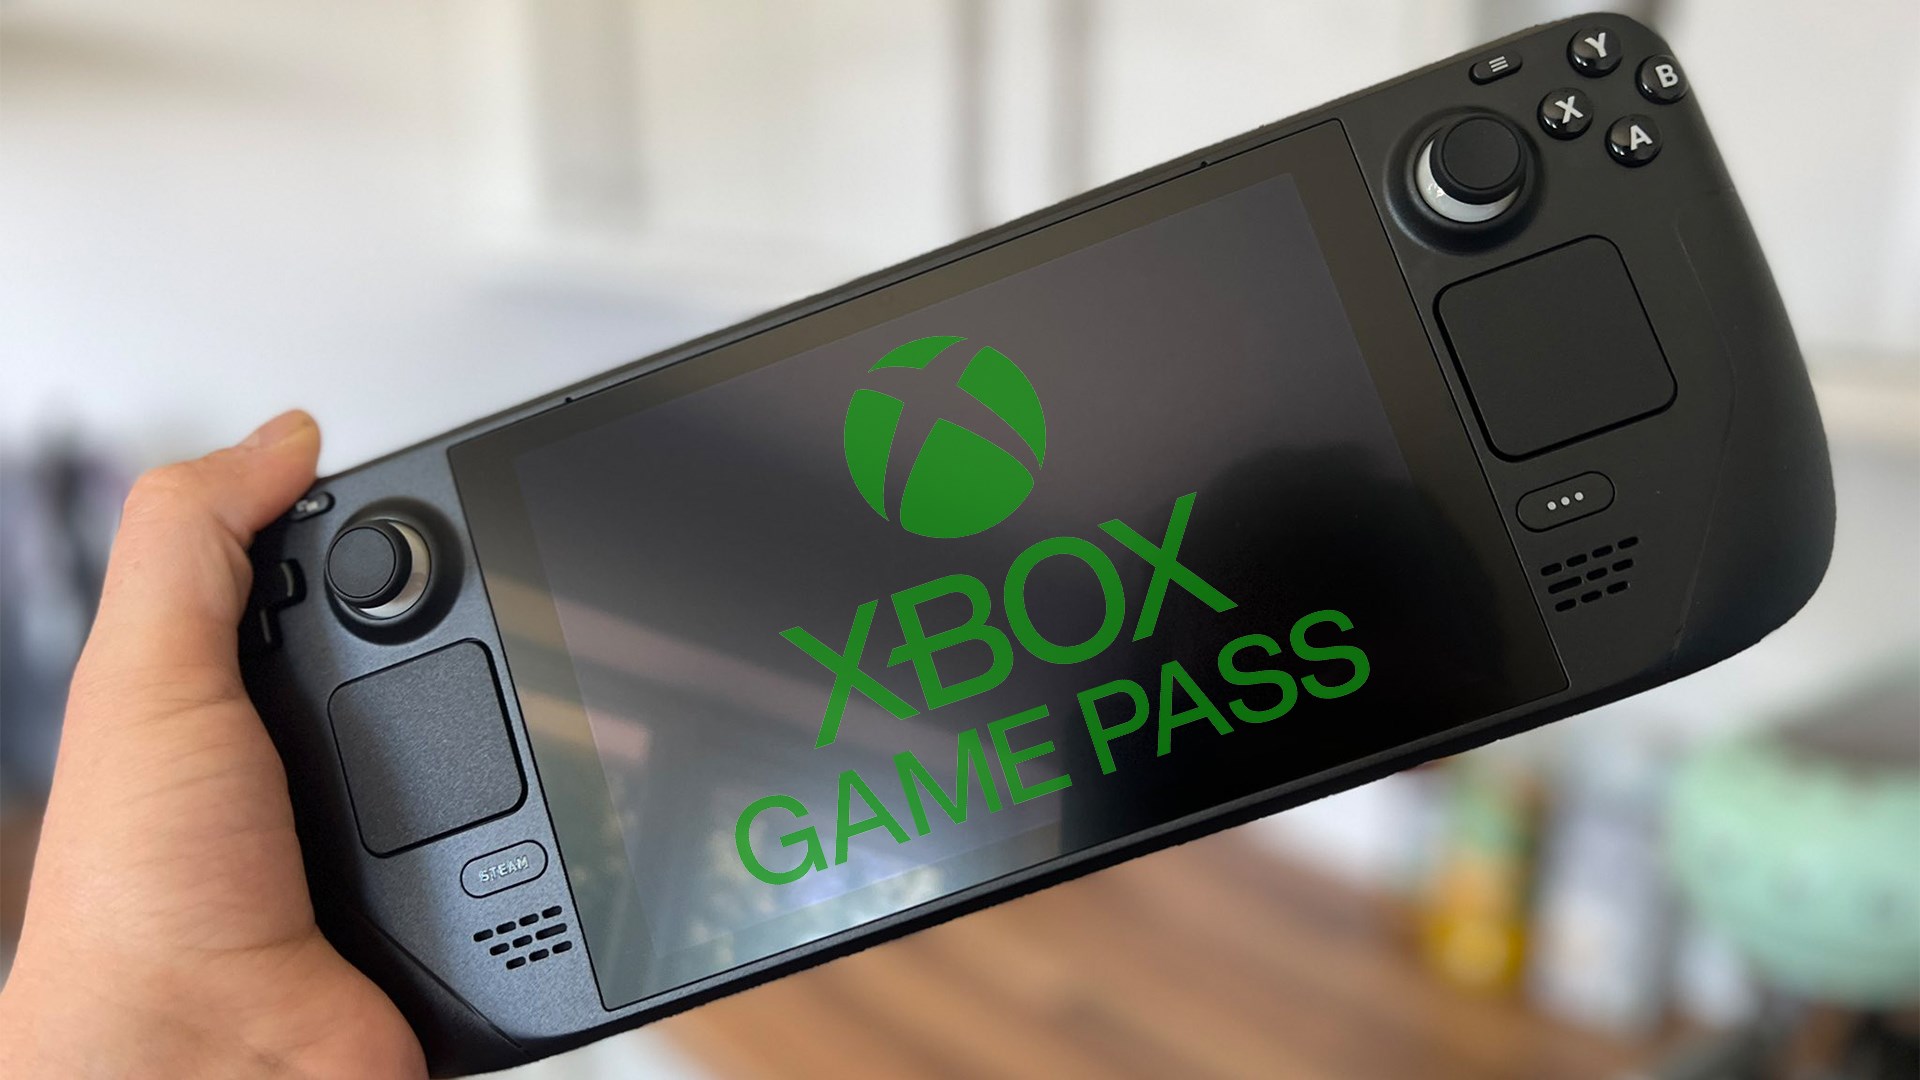 Yeni nesil Xbox, el konsolu olabilir! İki farklı sürümde geliyor